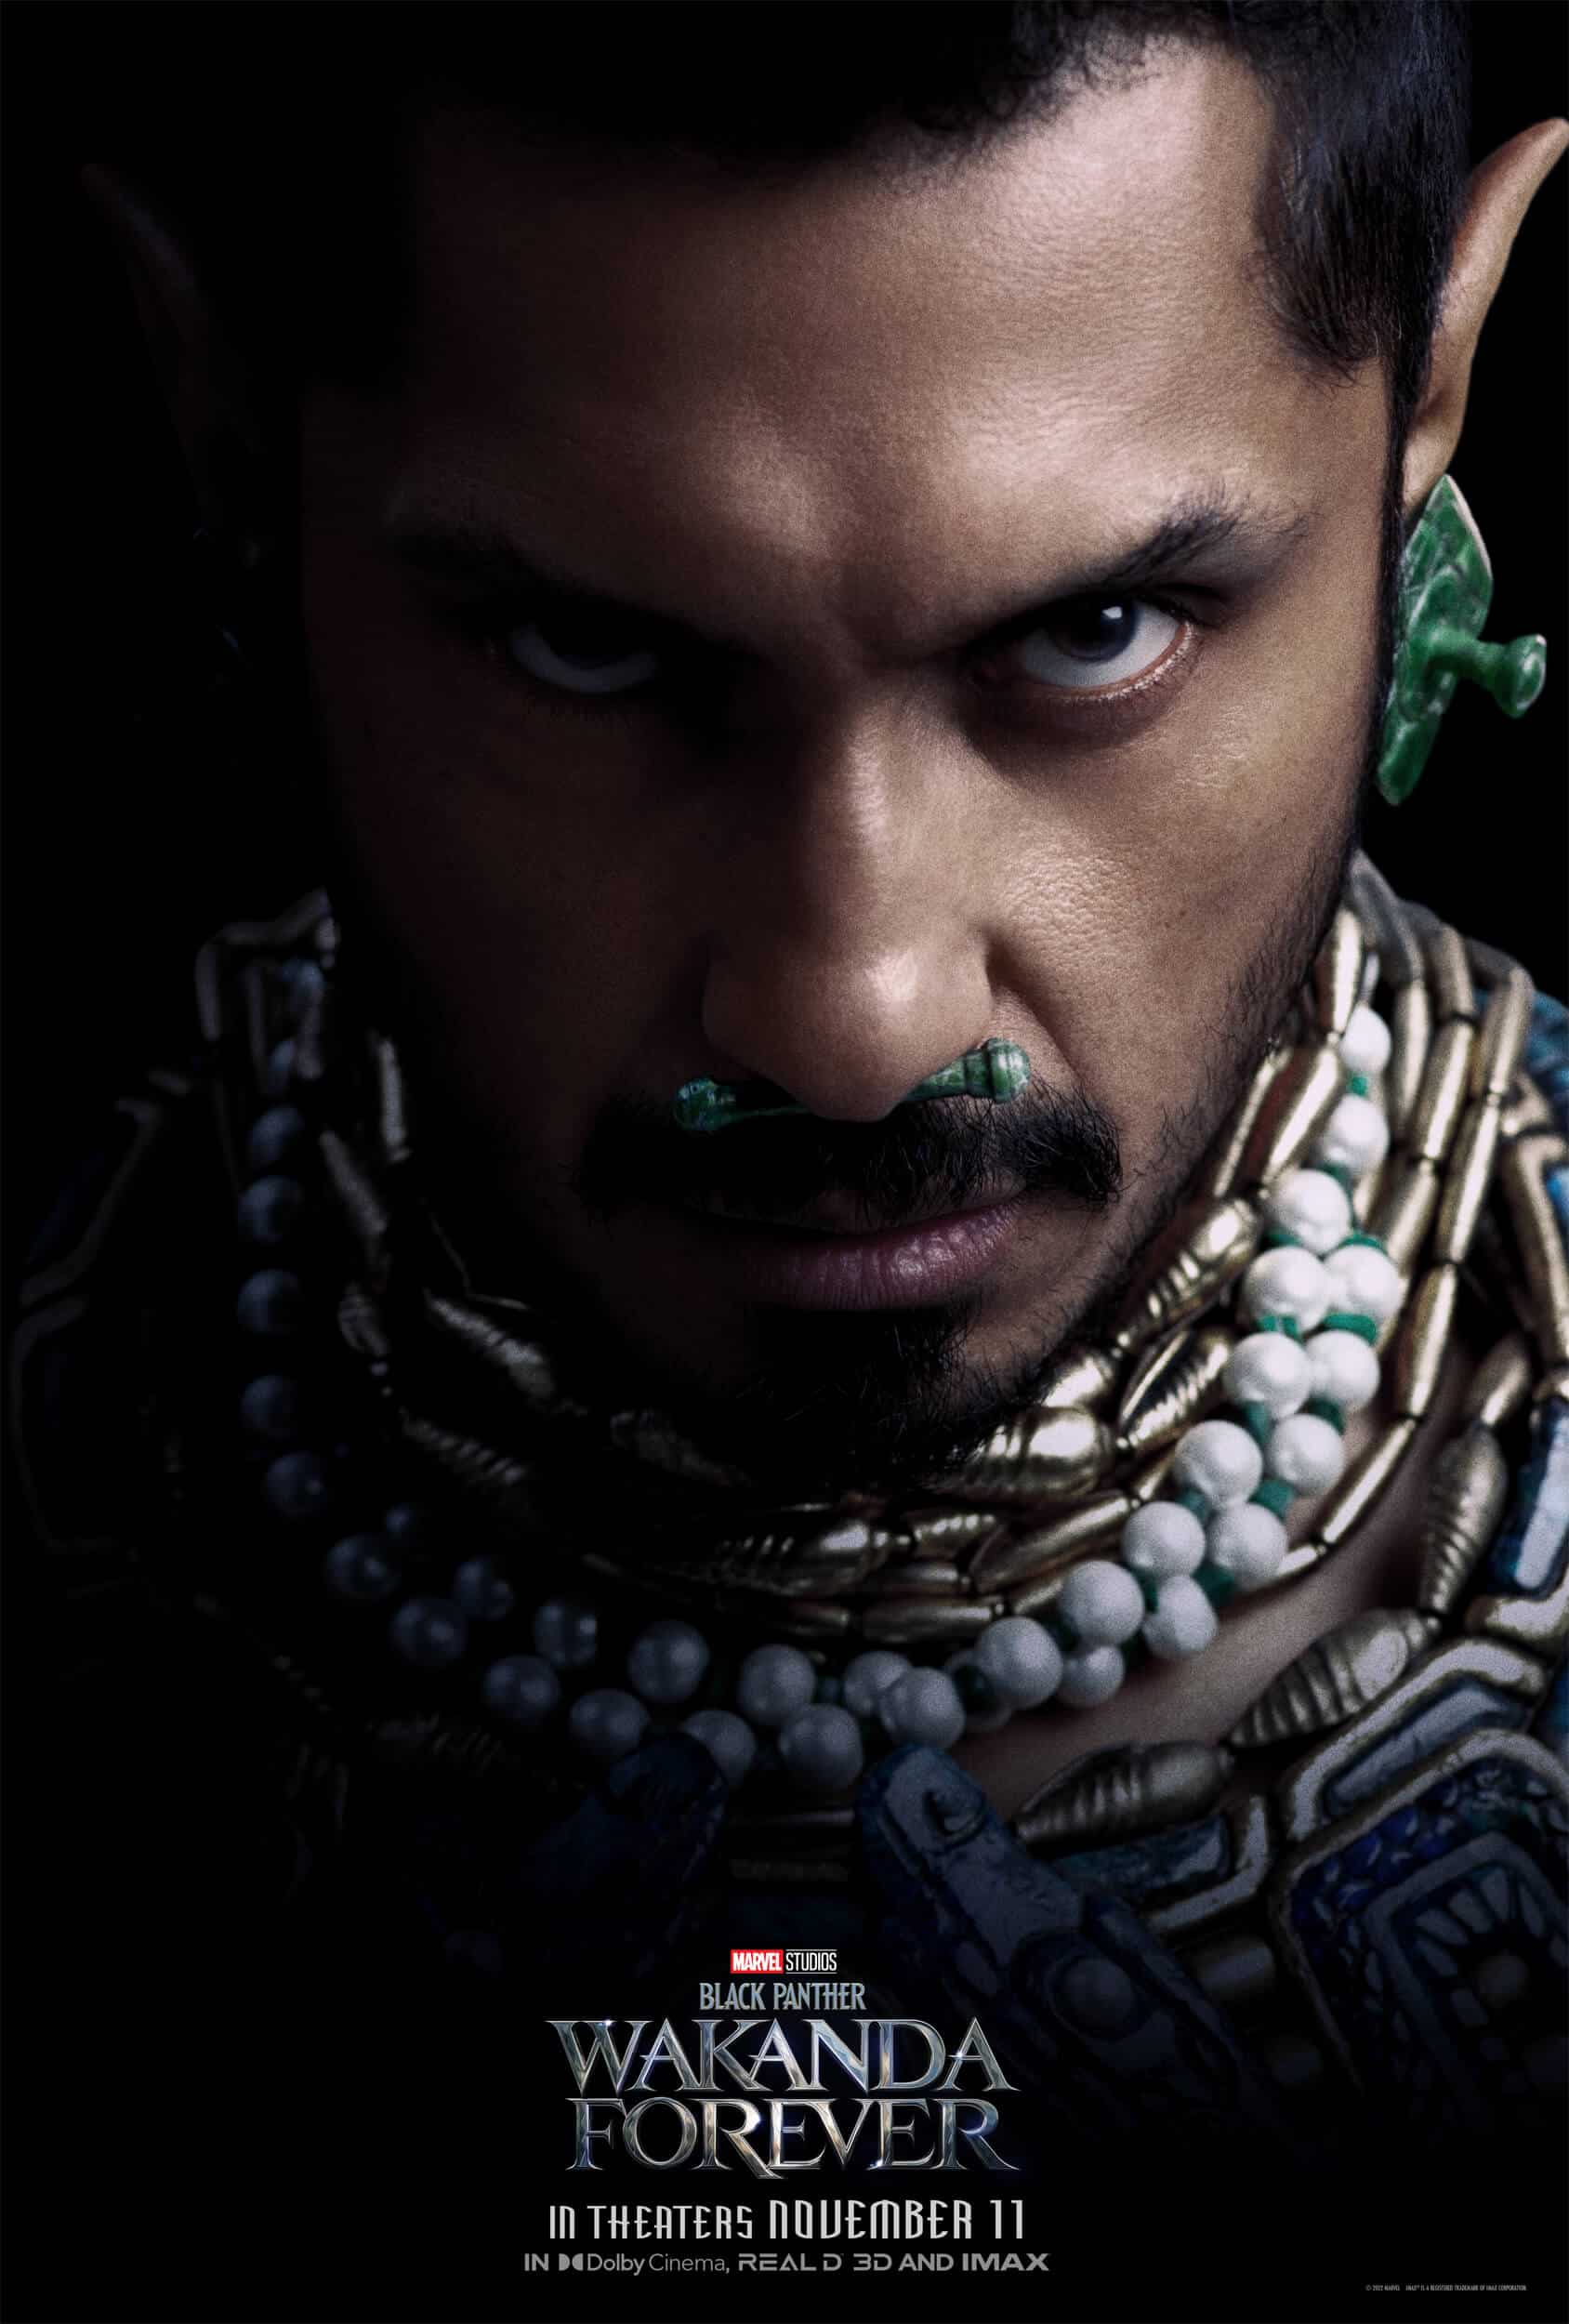 lanzamiento del largometraje y afiches de personajes de “black panther: wakanda forever” de marvel